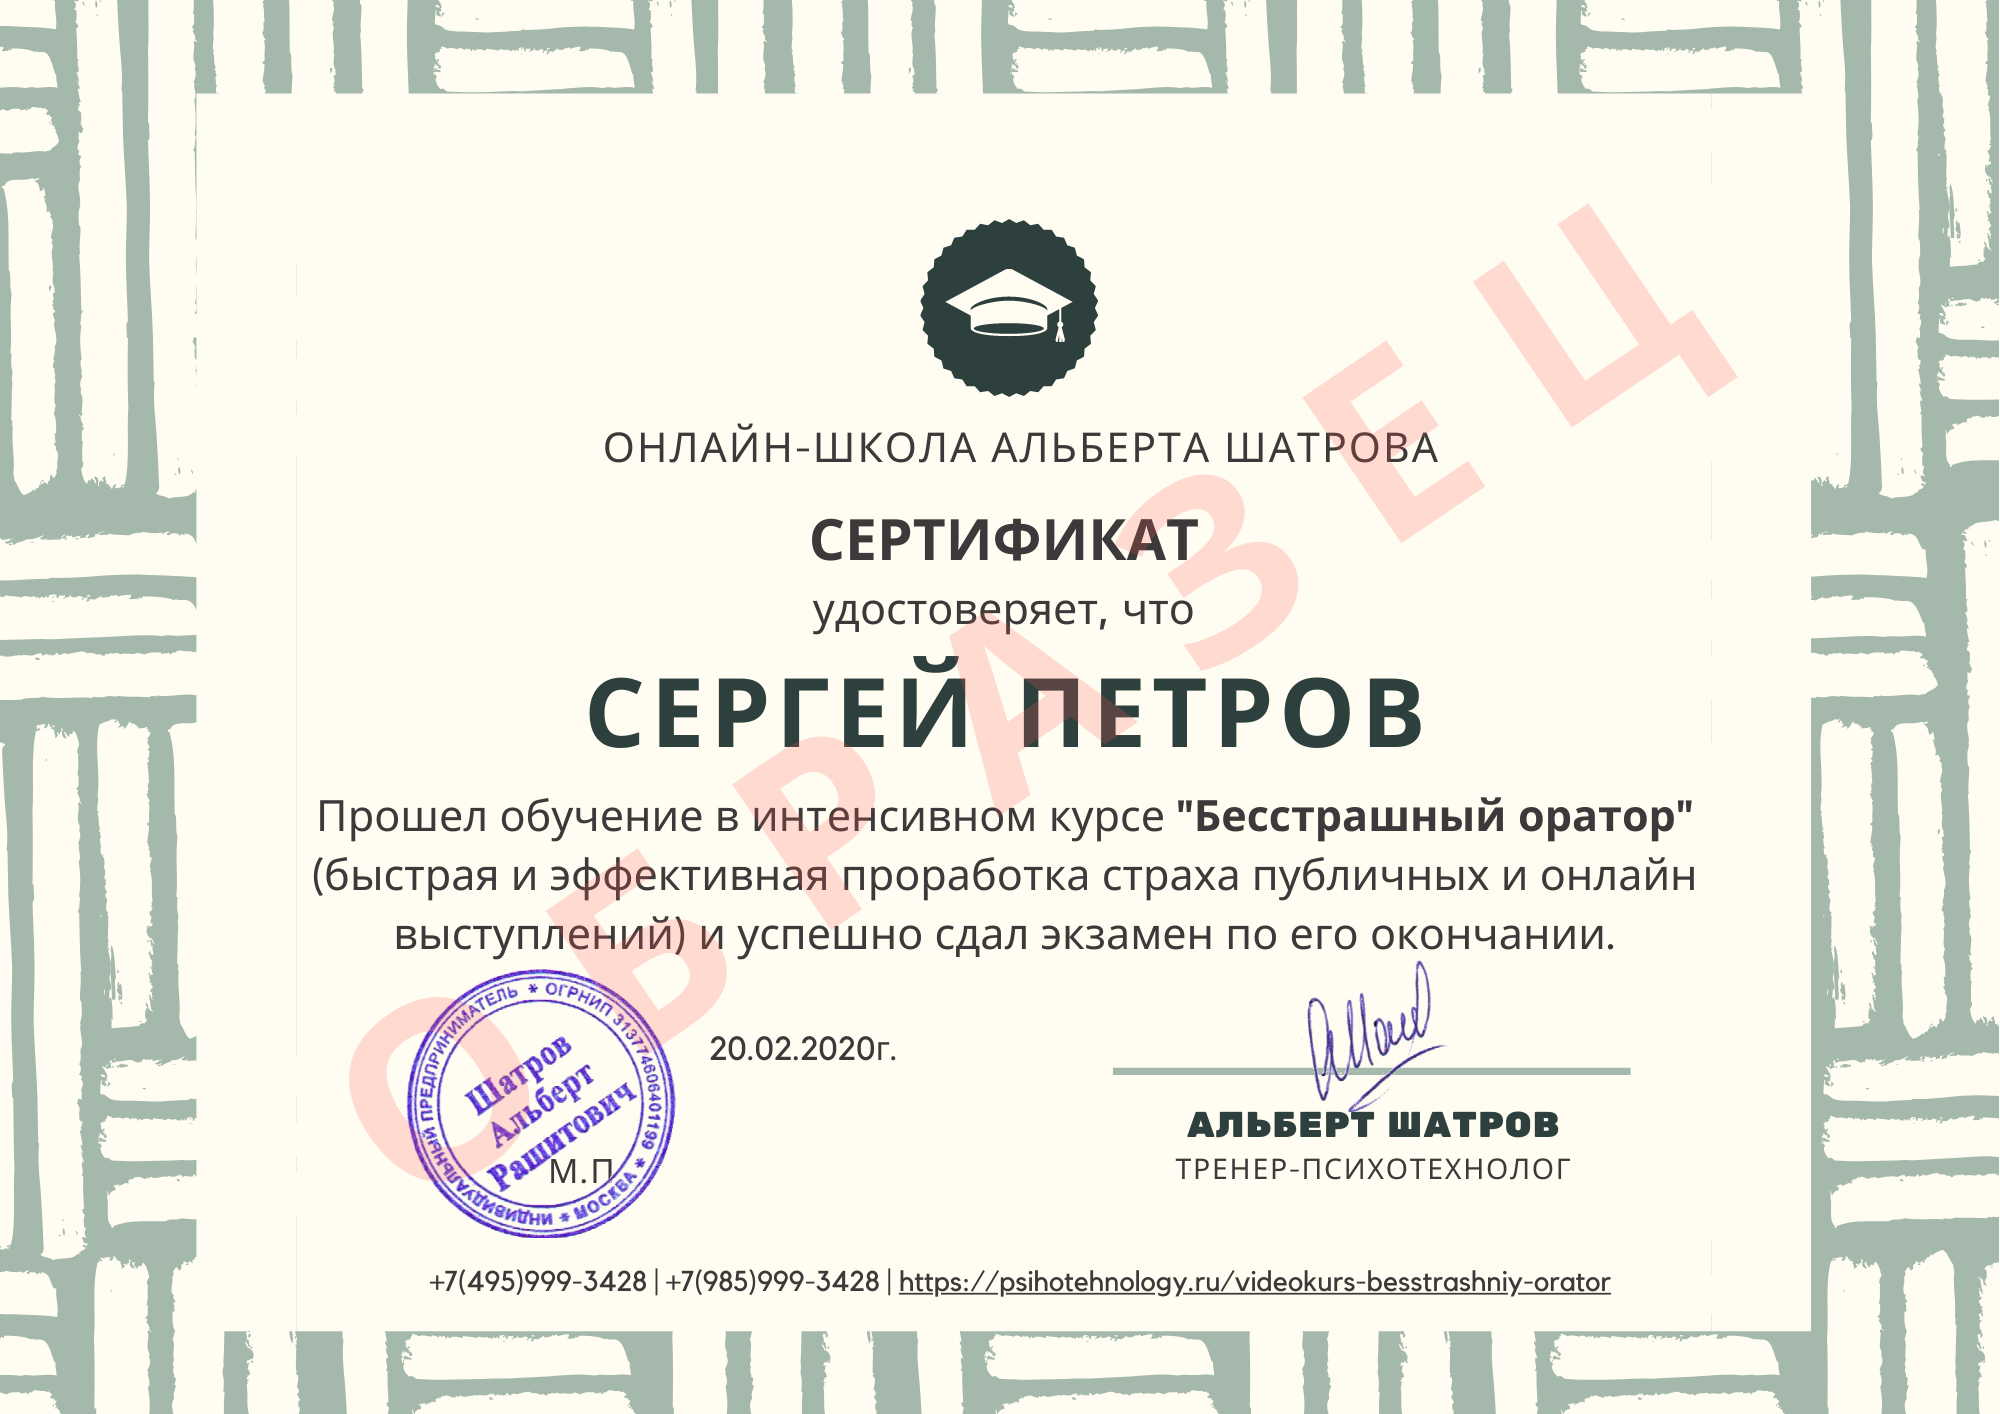 Сертификат о прохождении курса